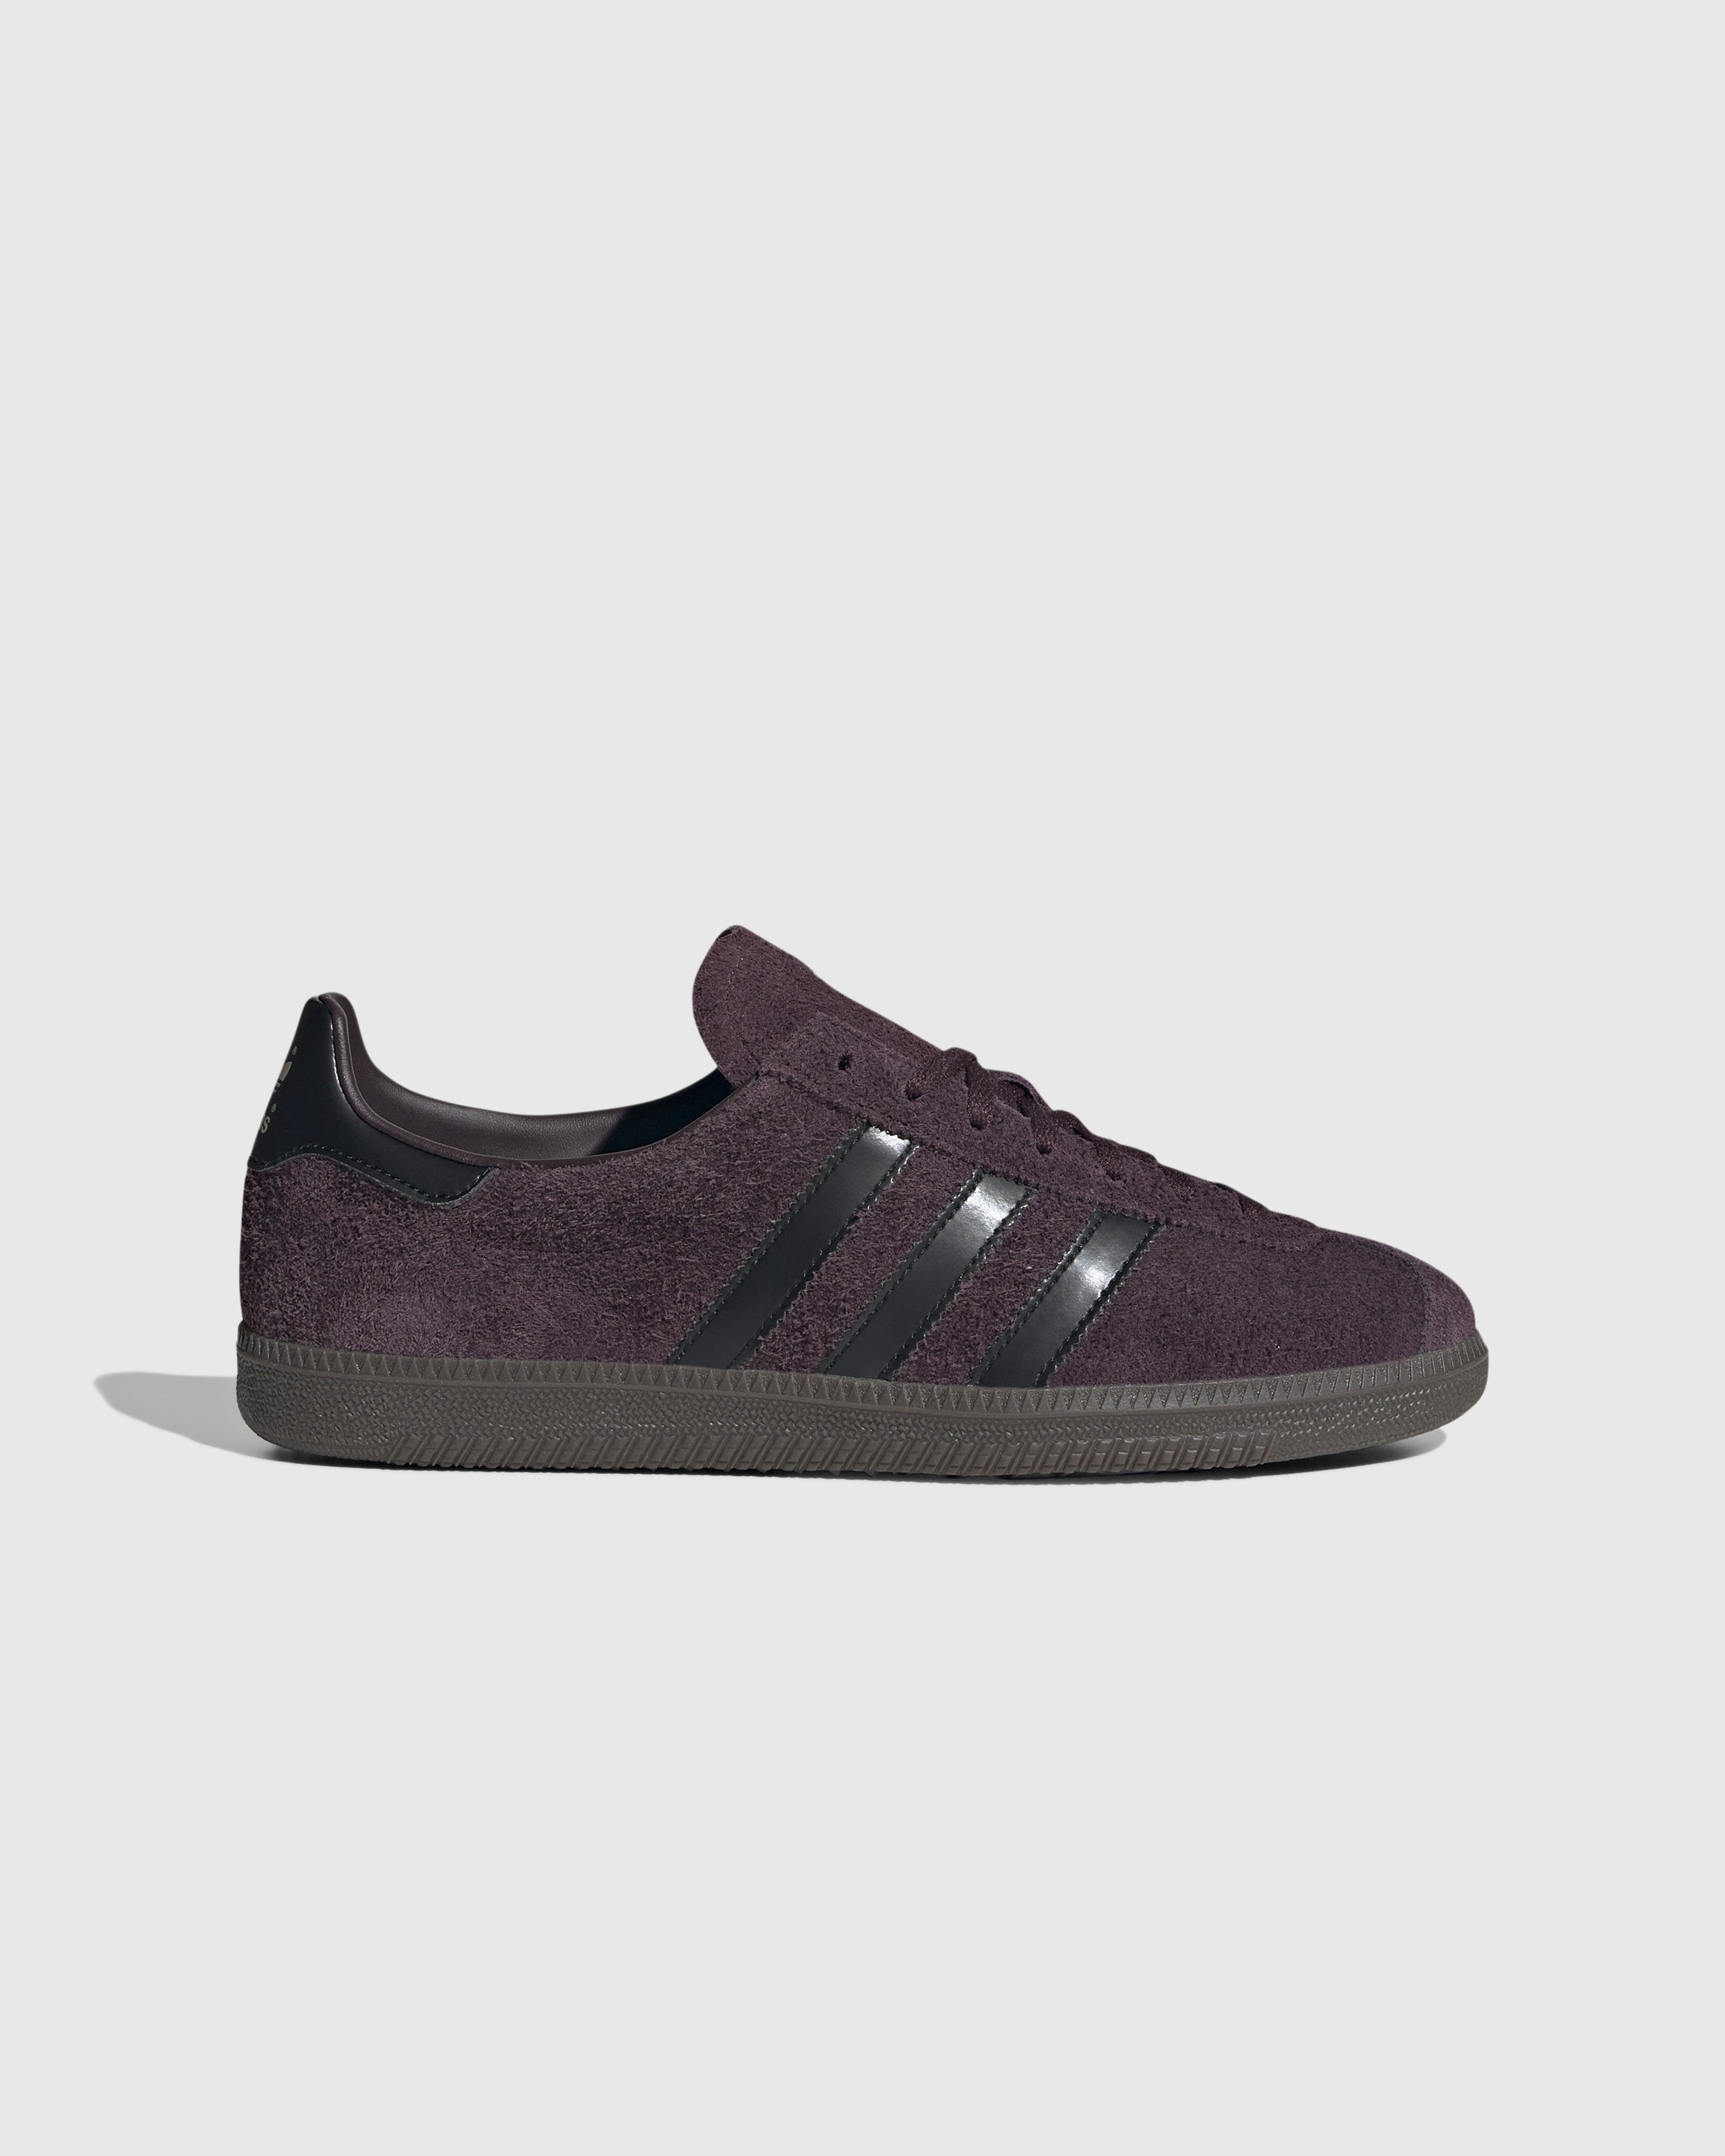 Adidas - State Brown - Footwear - Brown - Image 1